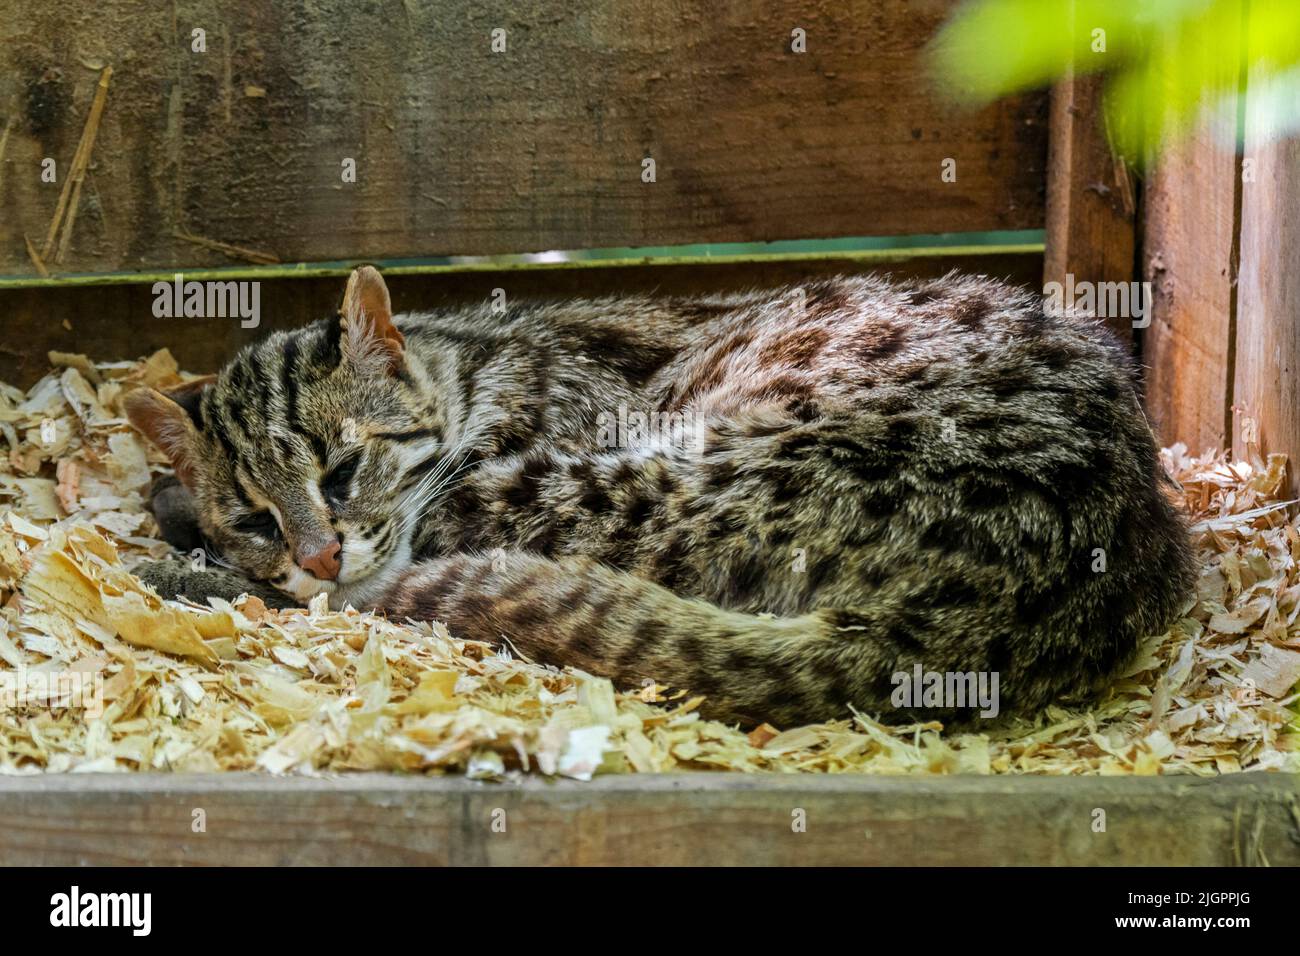 Chat léopard du Bengale (Prionailurus bengalensis bengalensis) originaire d'Asie du Sud et de l'est, dormant dans une enceinte au zoo Parc des Félins, France Banque D'Images